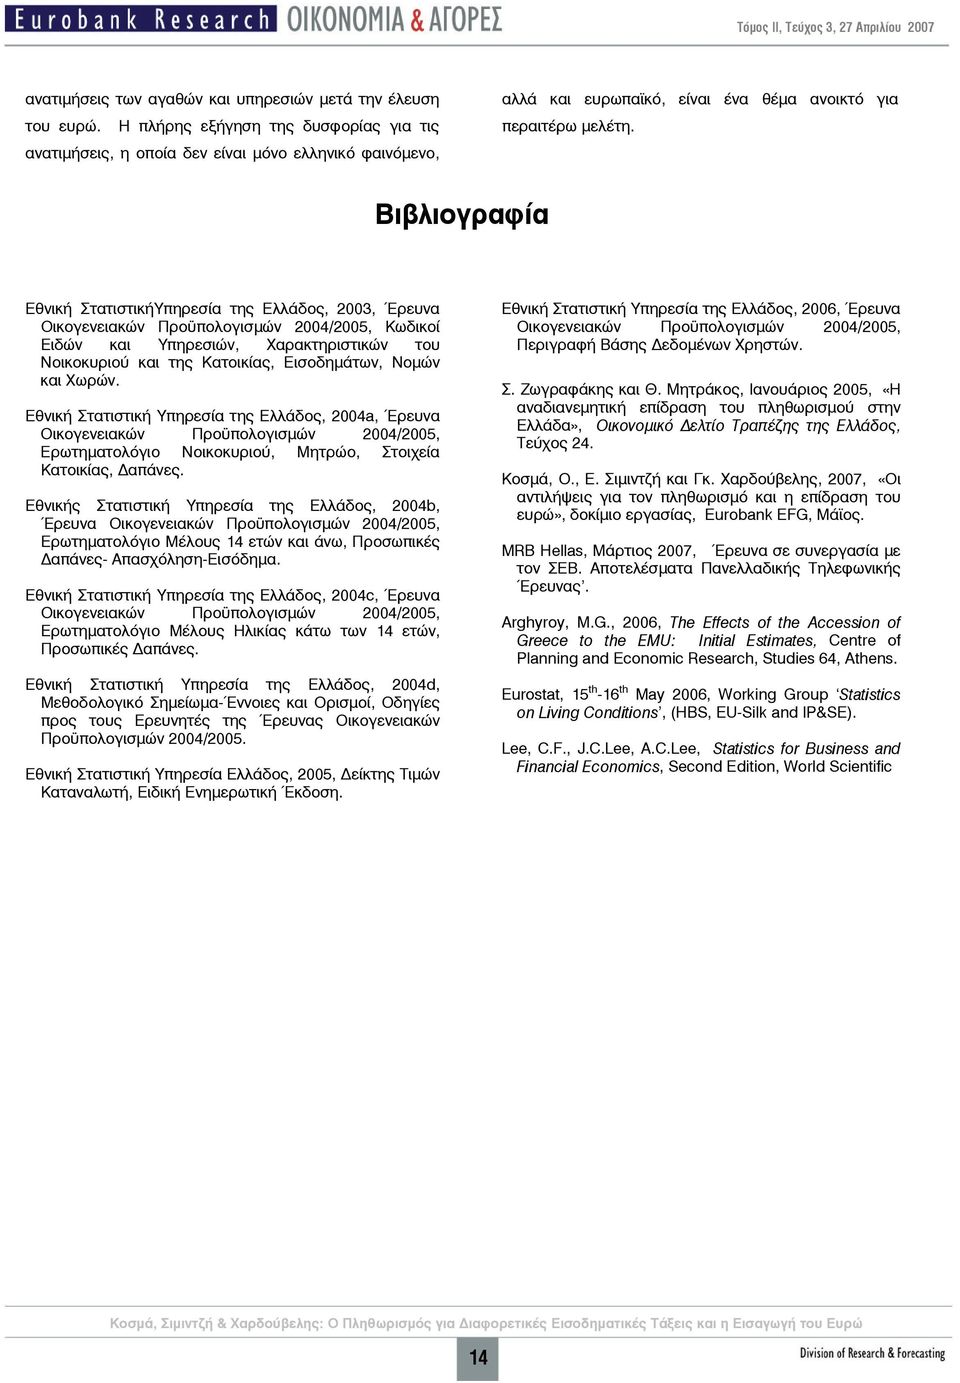 Βιβλιογραφία Εθνική ΣτατιστικήΥπηρεσία της Ελλάδος, 2003, Έρευνα Οικογενειακών Προϋπολογισμών 2004/2005, Κωδικοί Ειδών και Υπηρεσιών, Χαρακτηριστικών του Νοικοκυριού και της Κατοικίας, Εισοδημάτων,